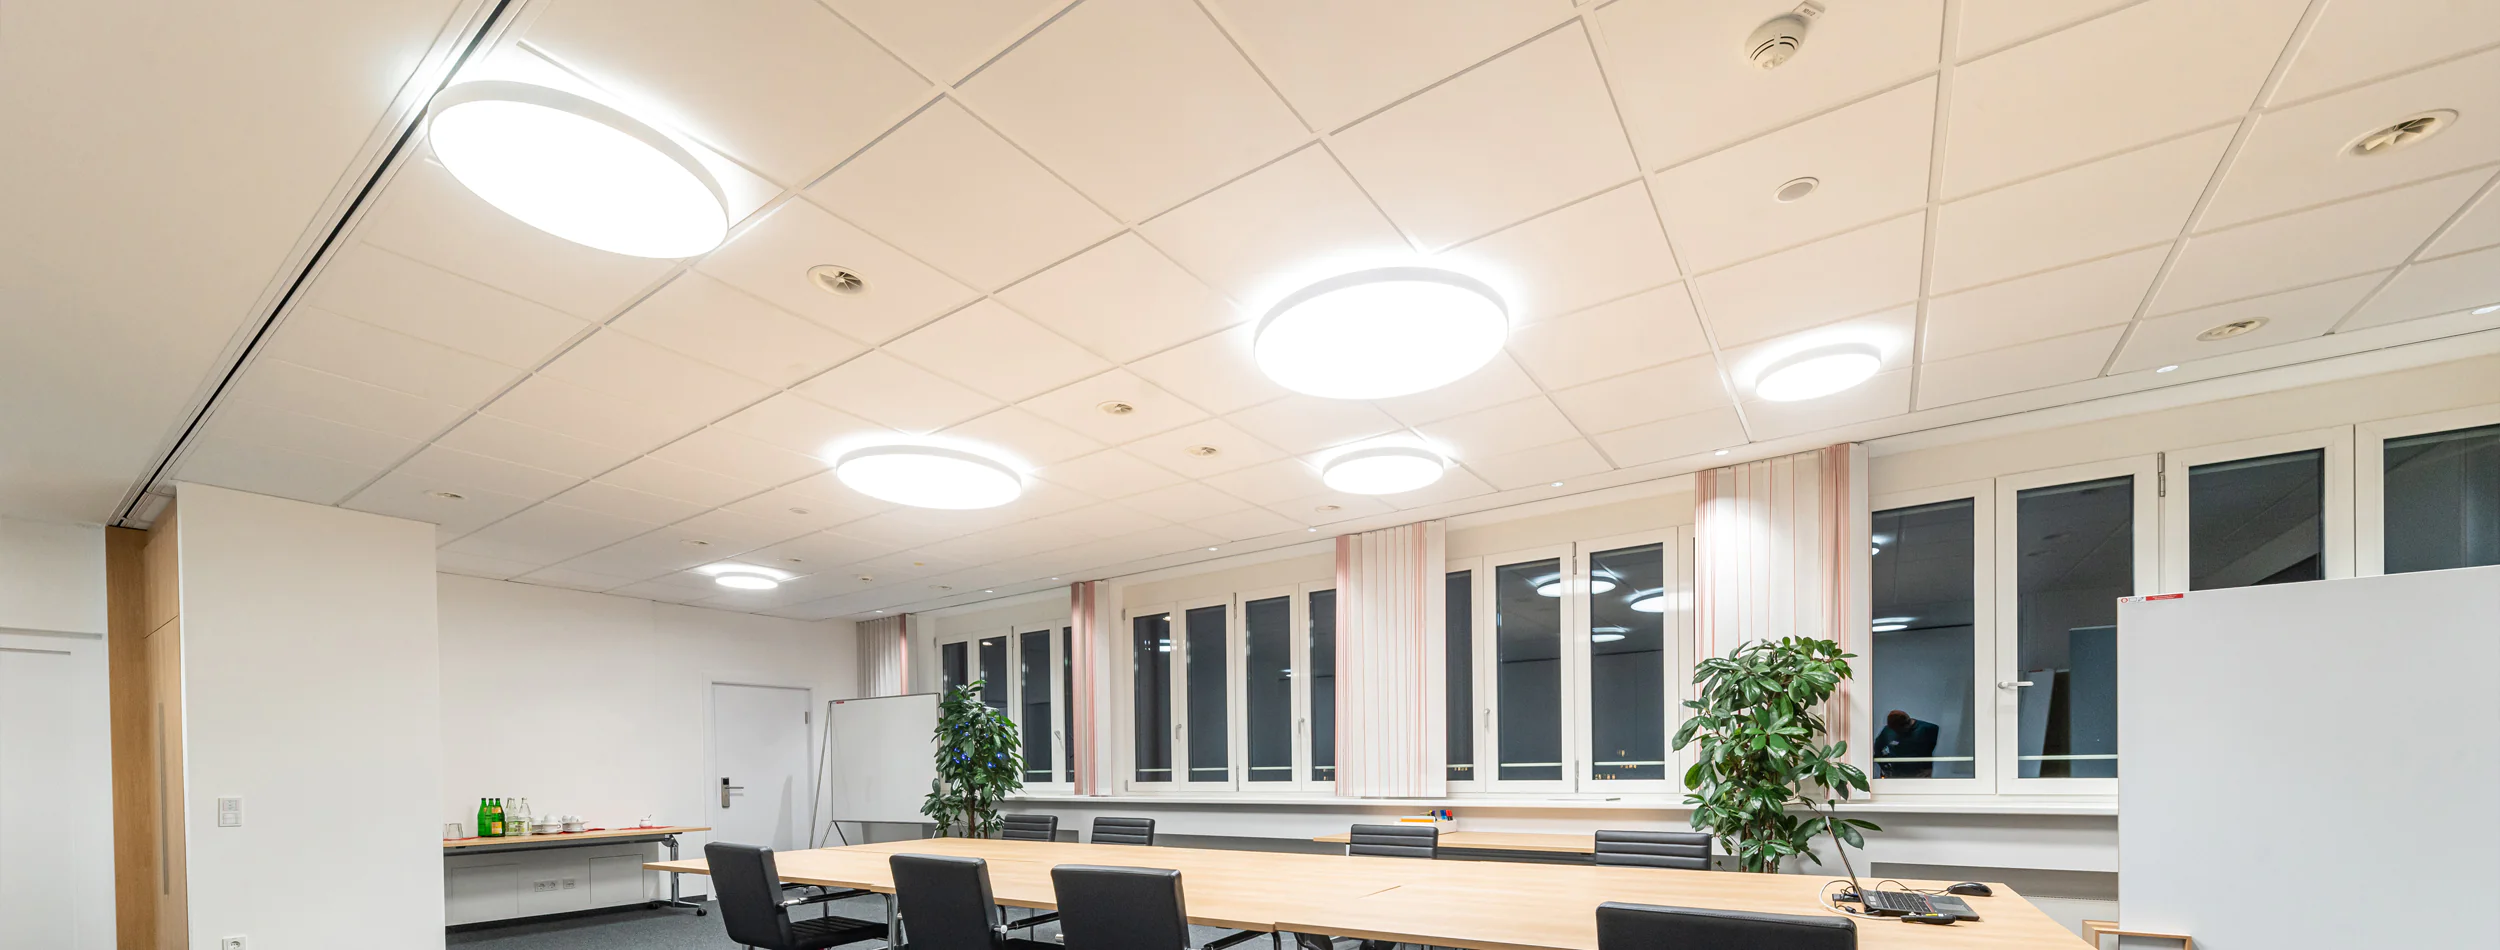 Lichtkonzepte für Unternehmen und öffentliche Gebäude